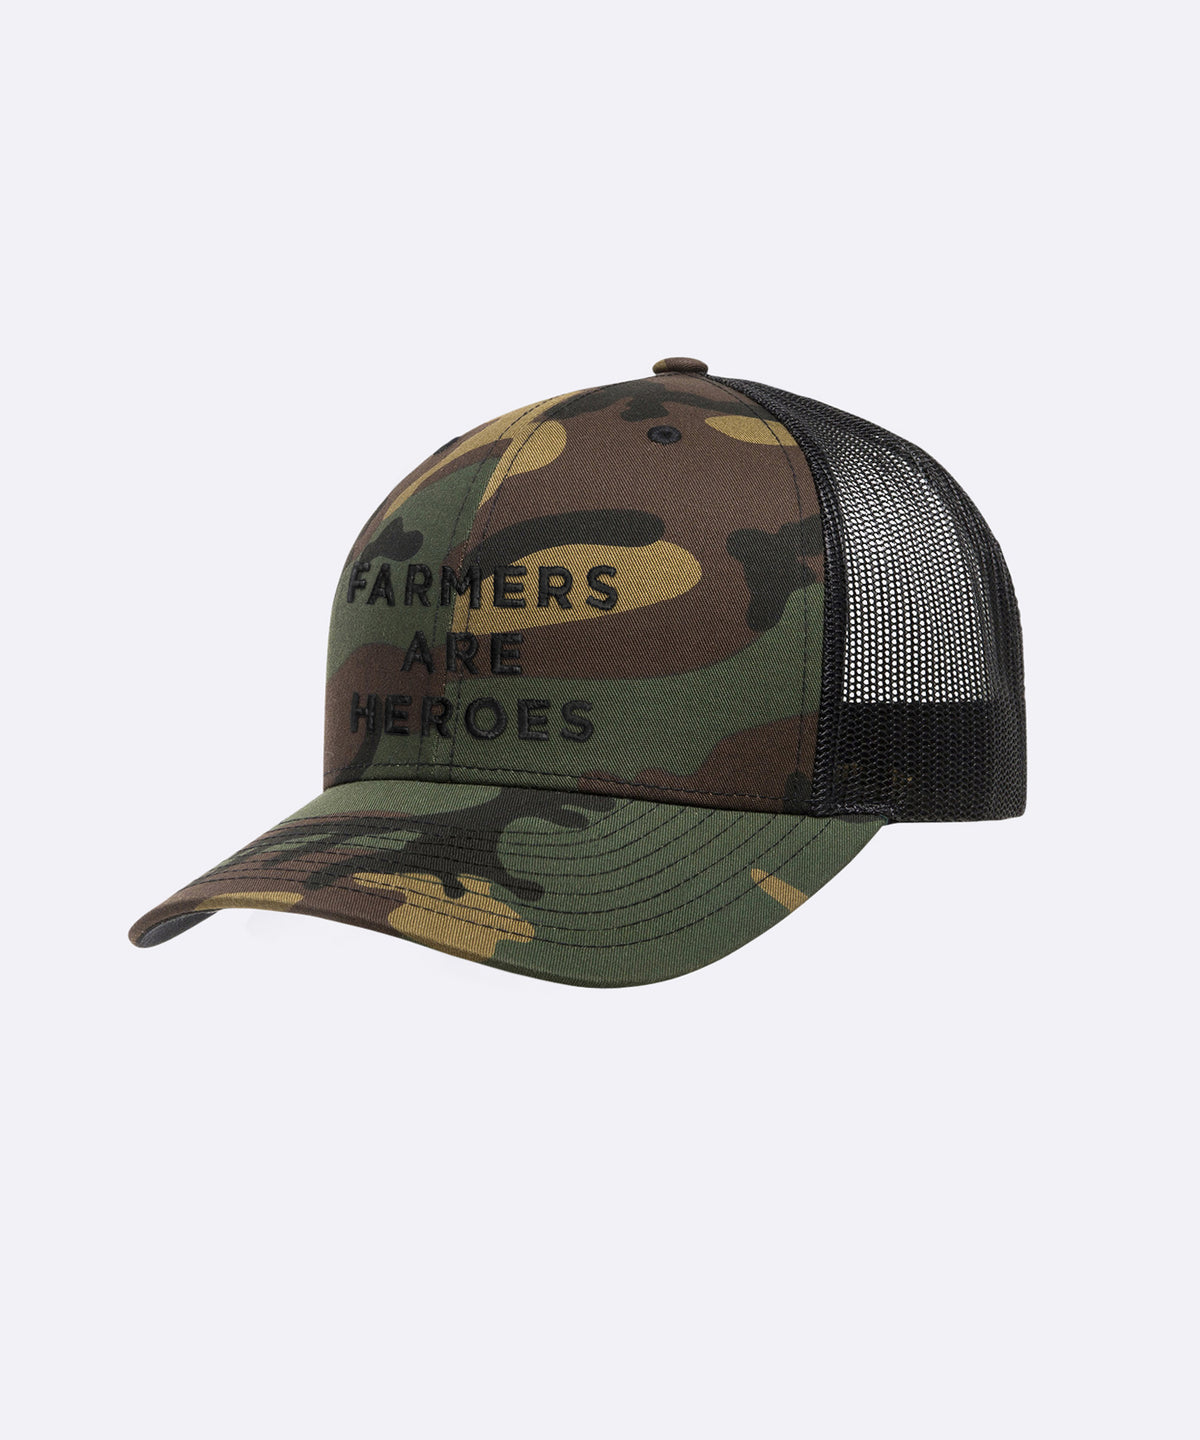 Farmers are Heroes Trucker Hat